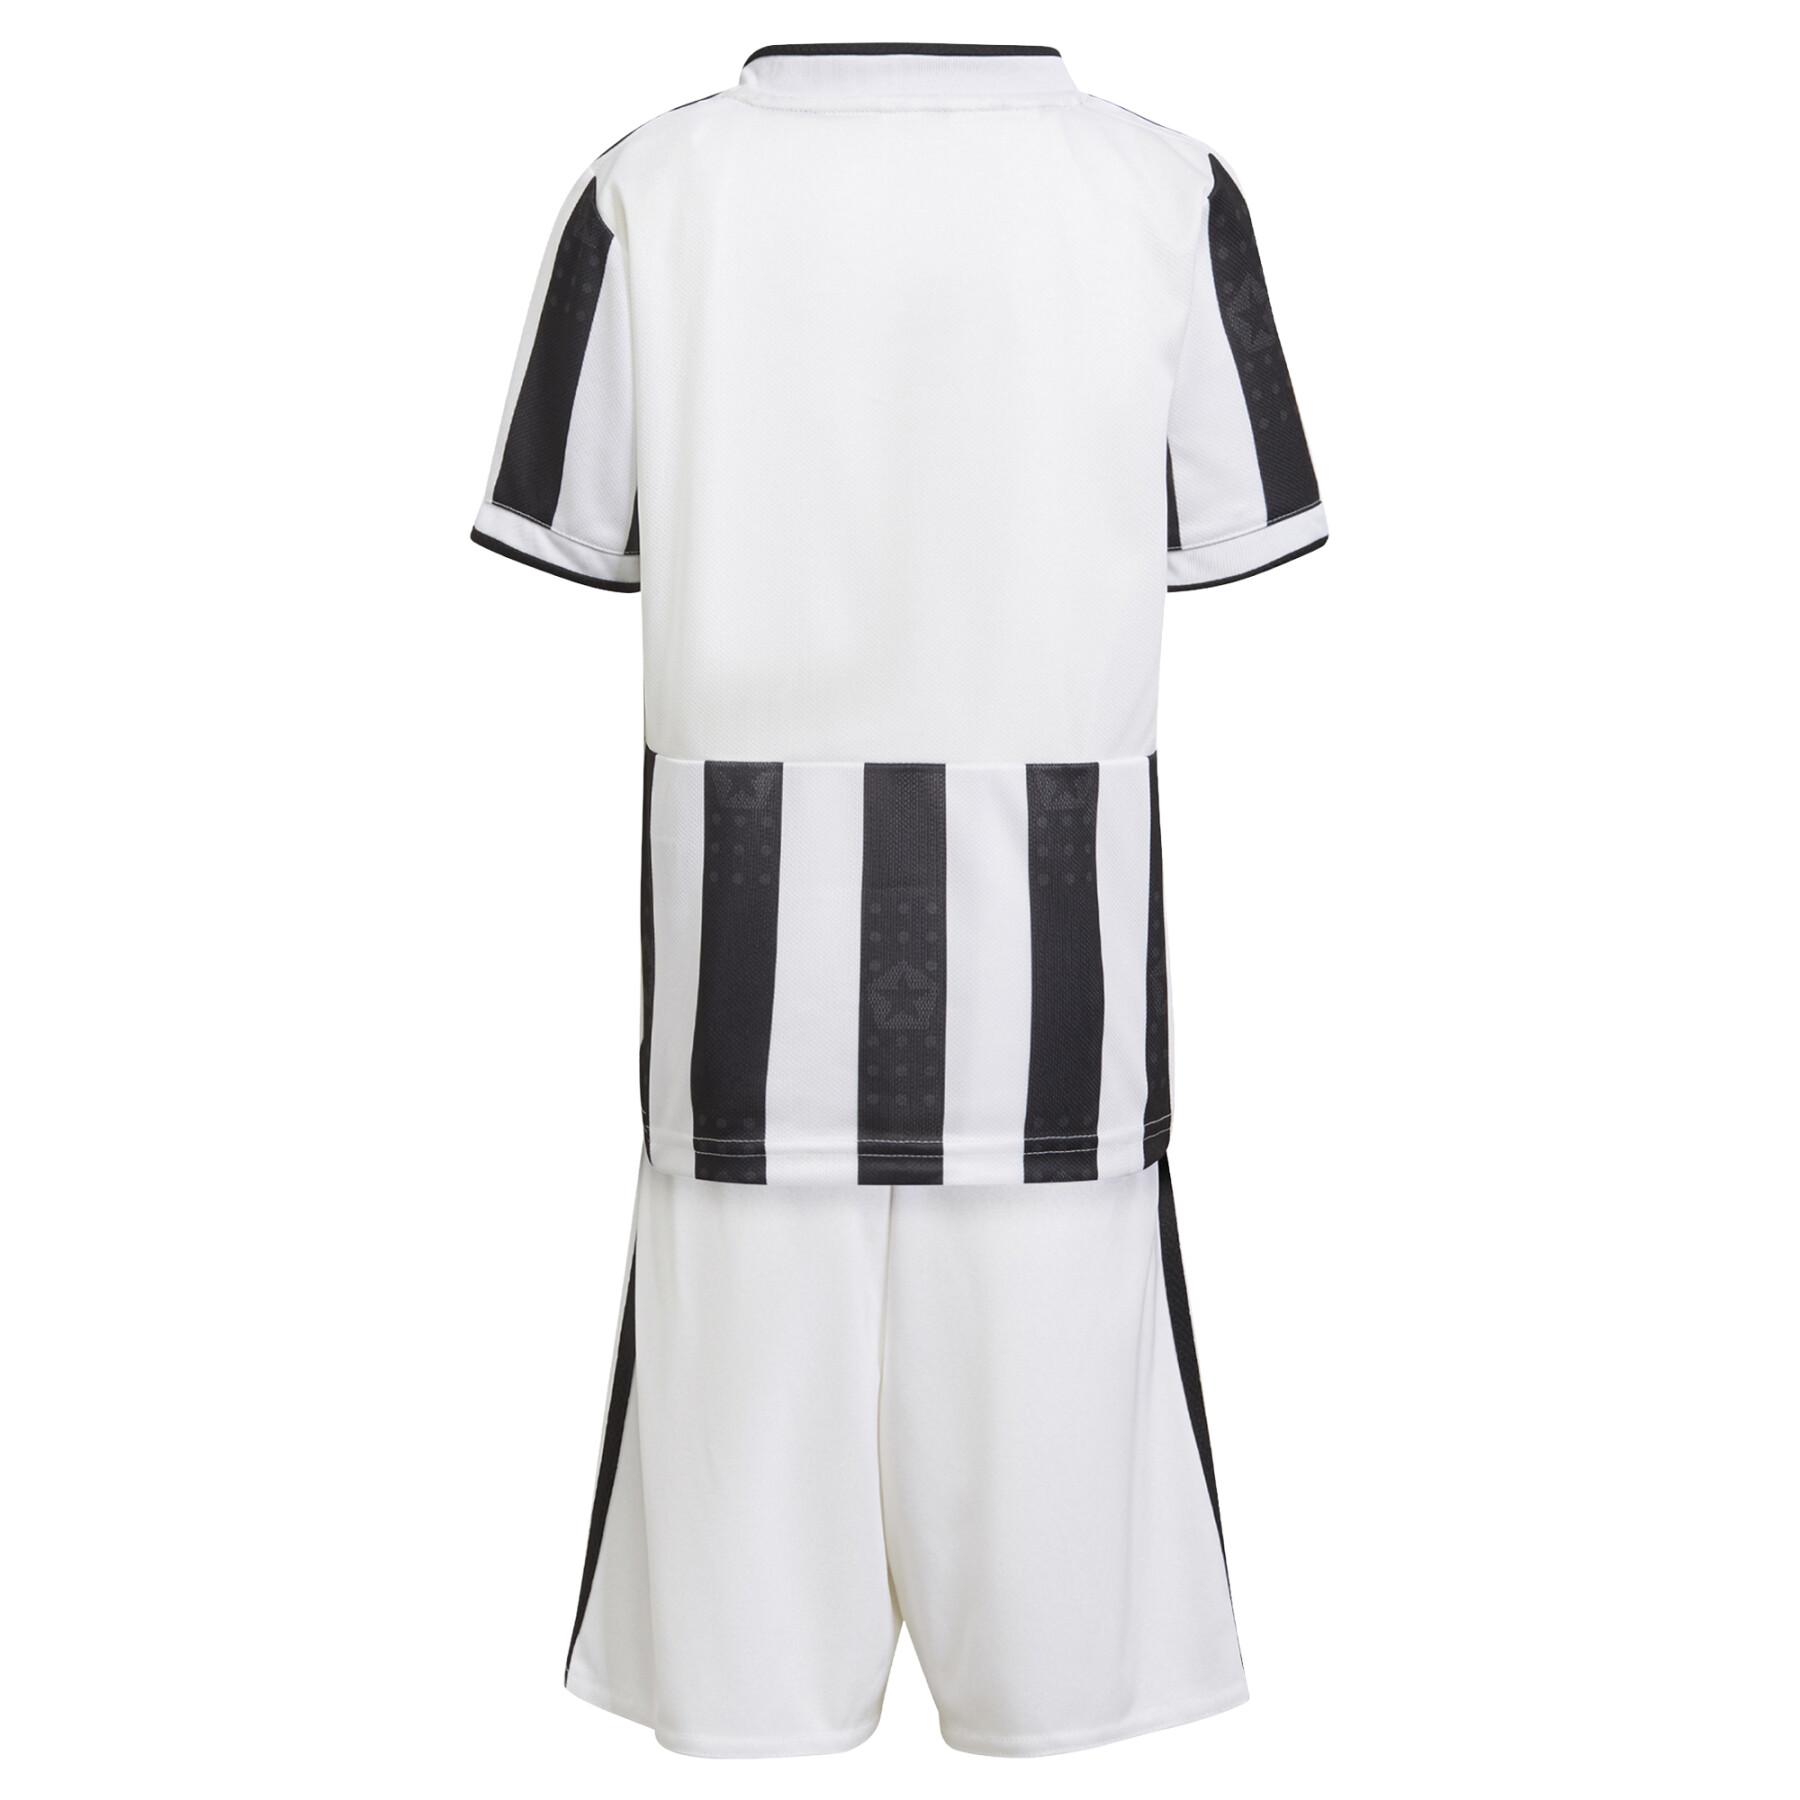 Mini kit domicile Juventus 2021/22